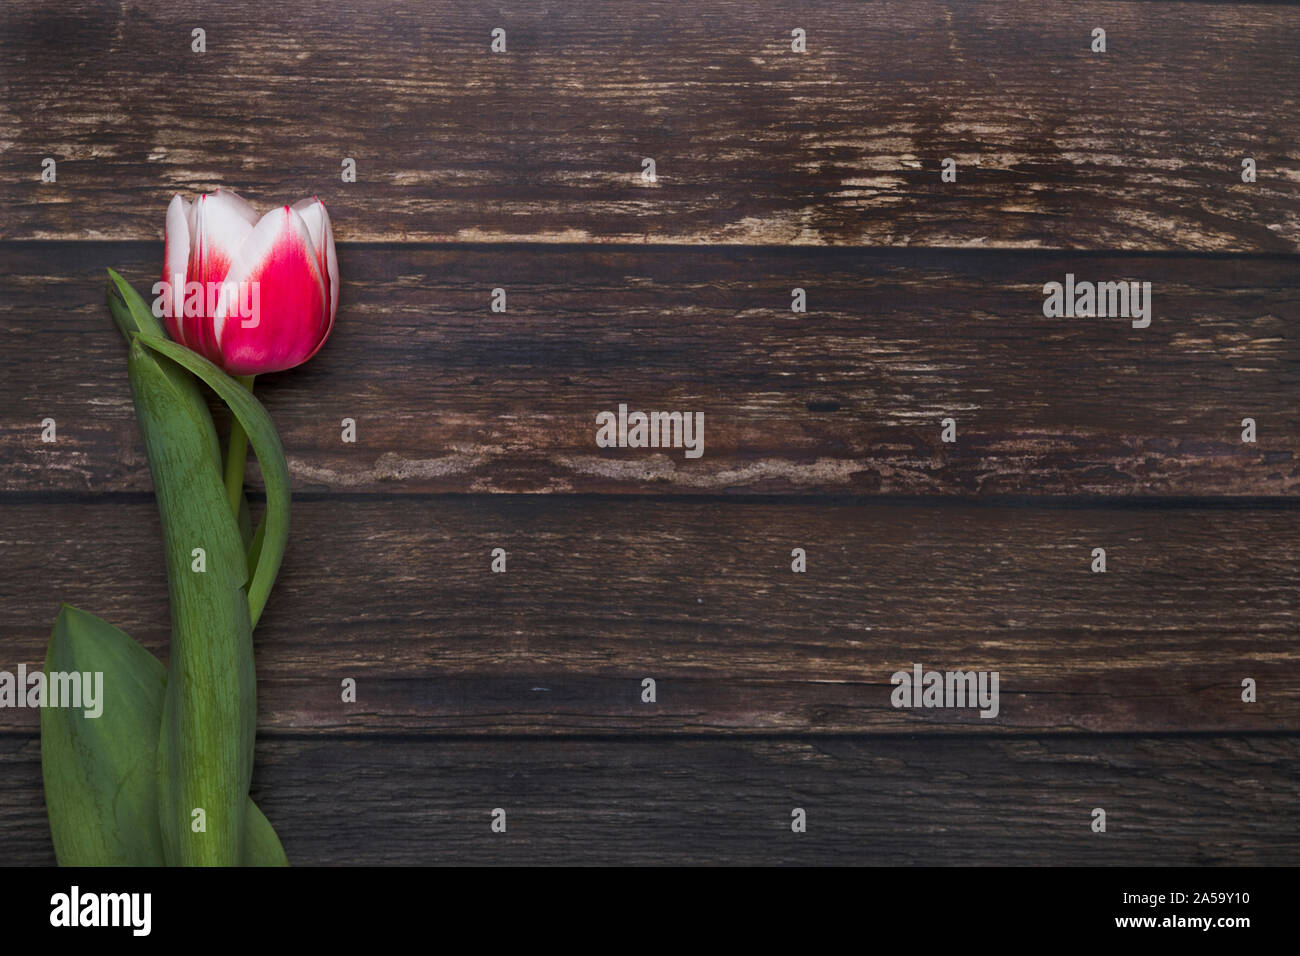 Une tulipe étendu sur la terre vue laïcs vu de dessus. La fleur rose et blanc est sur une table en bois rustique, et il y a trop d'espace aux ro Banque D'Images